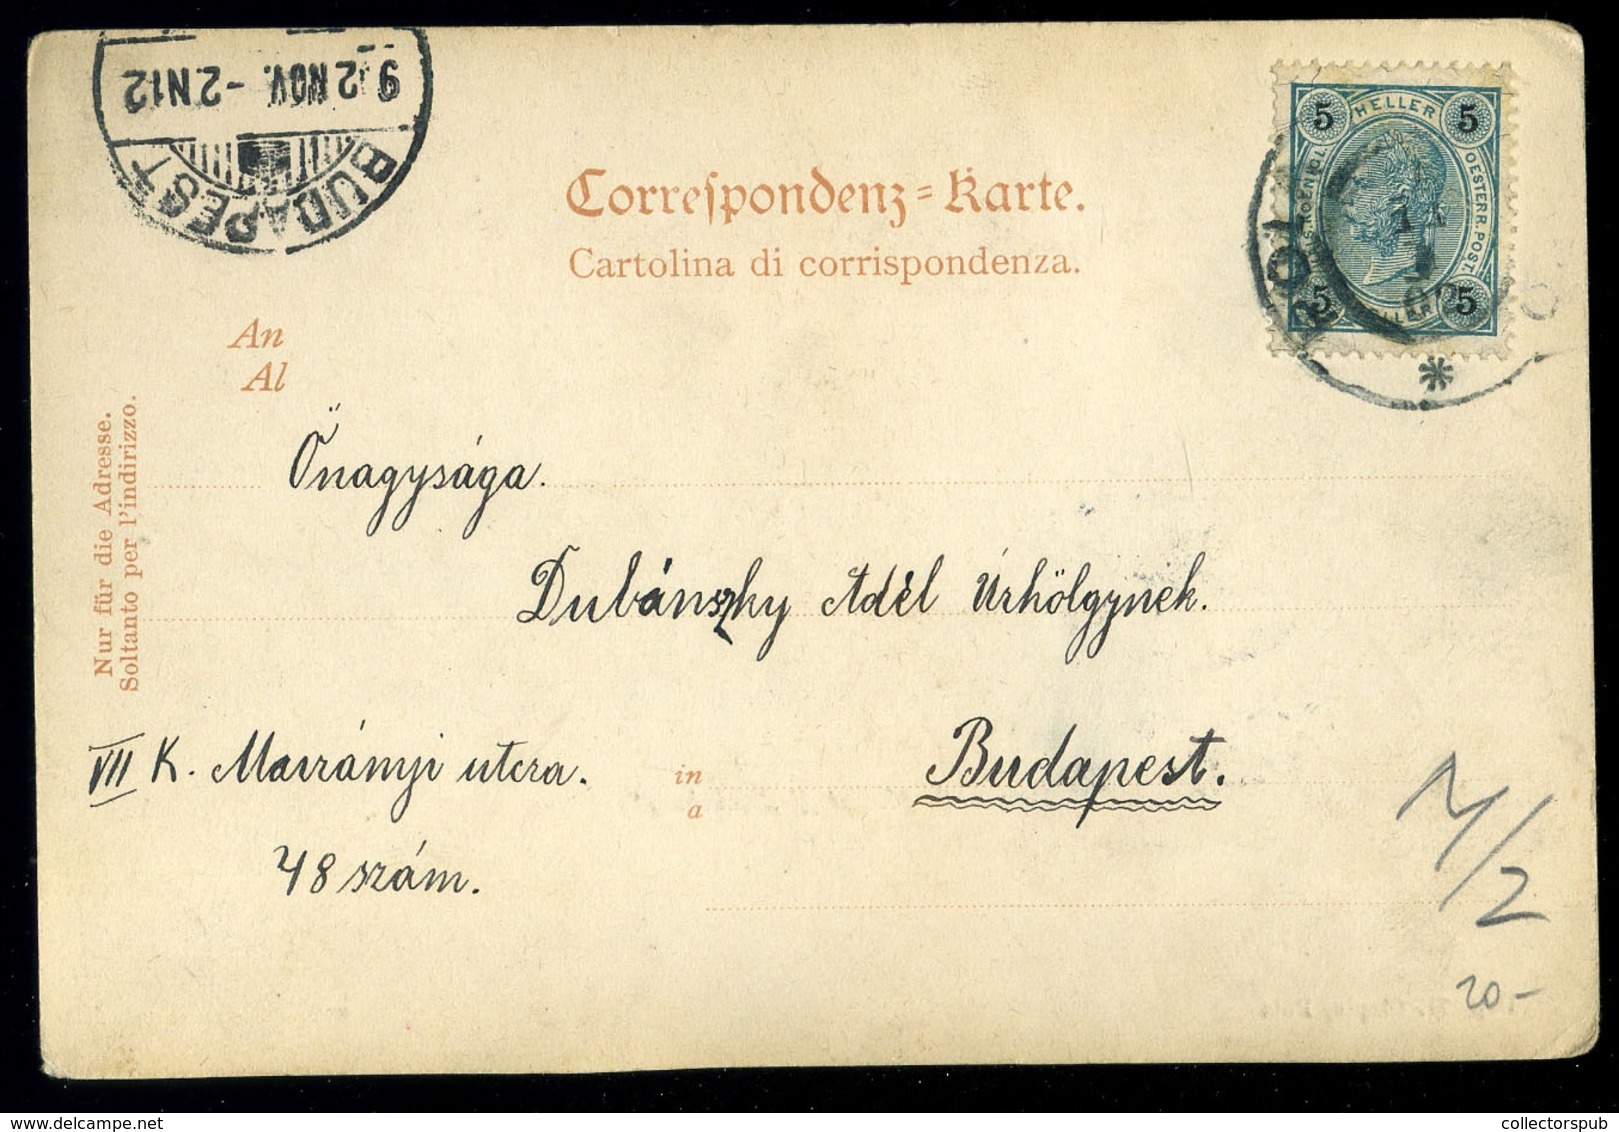 K.u.K. HADITENGERÉSZET 1902.Pola Képeslap,SMS Habsburg - Hungary